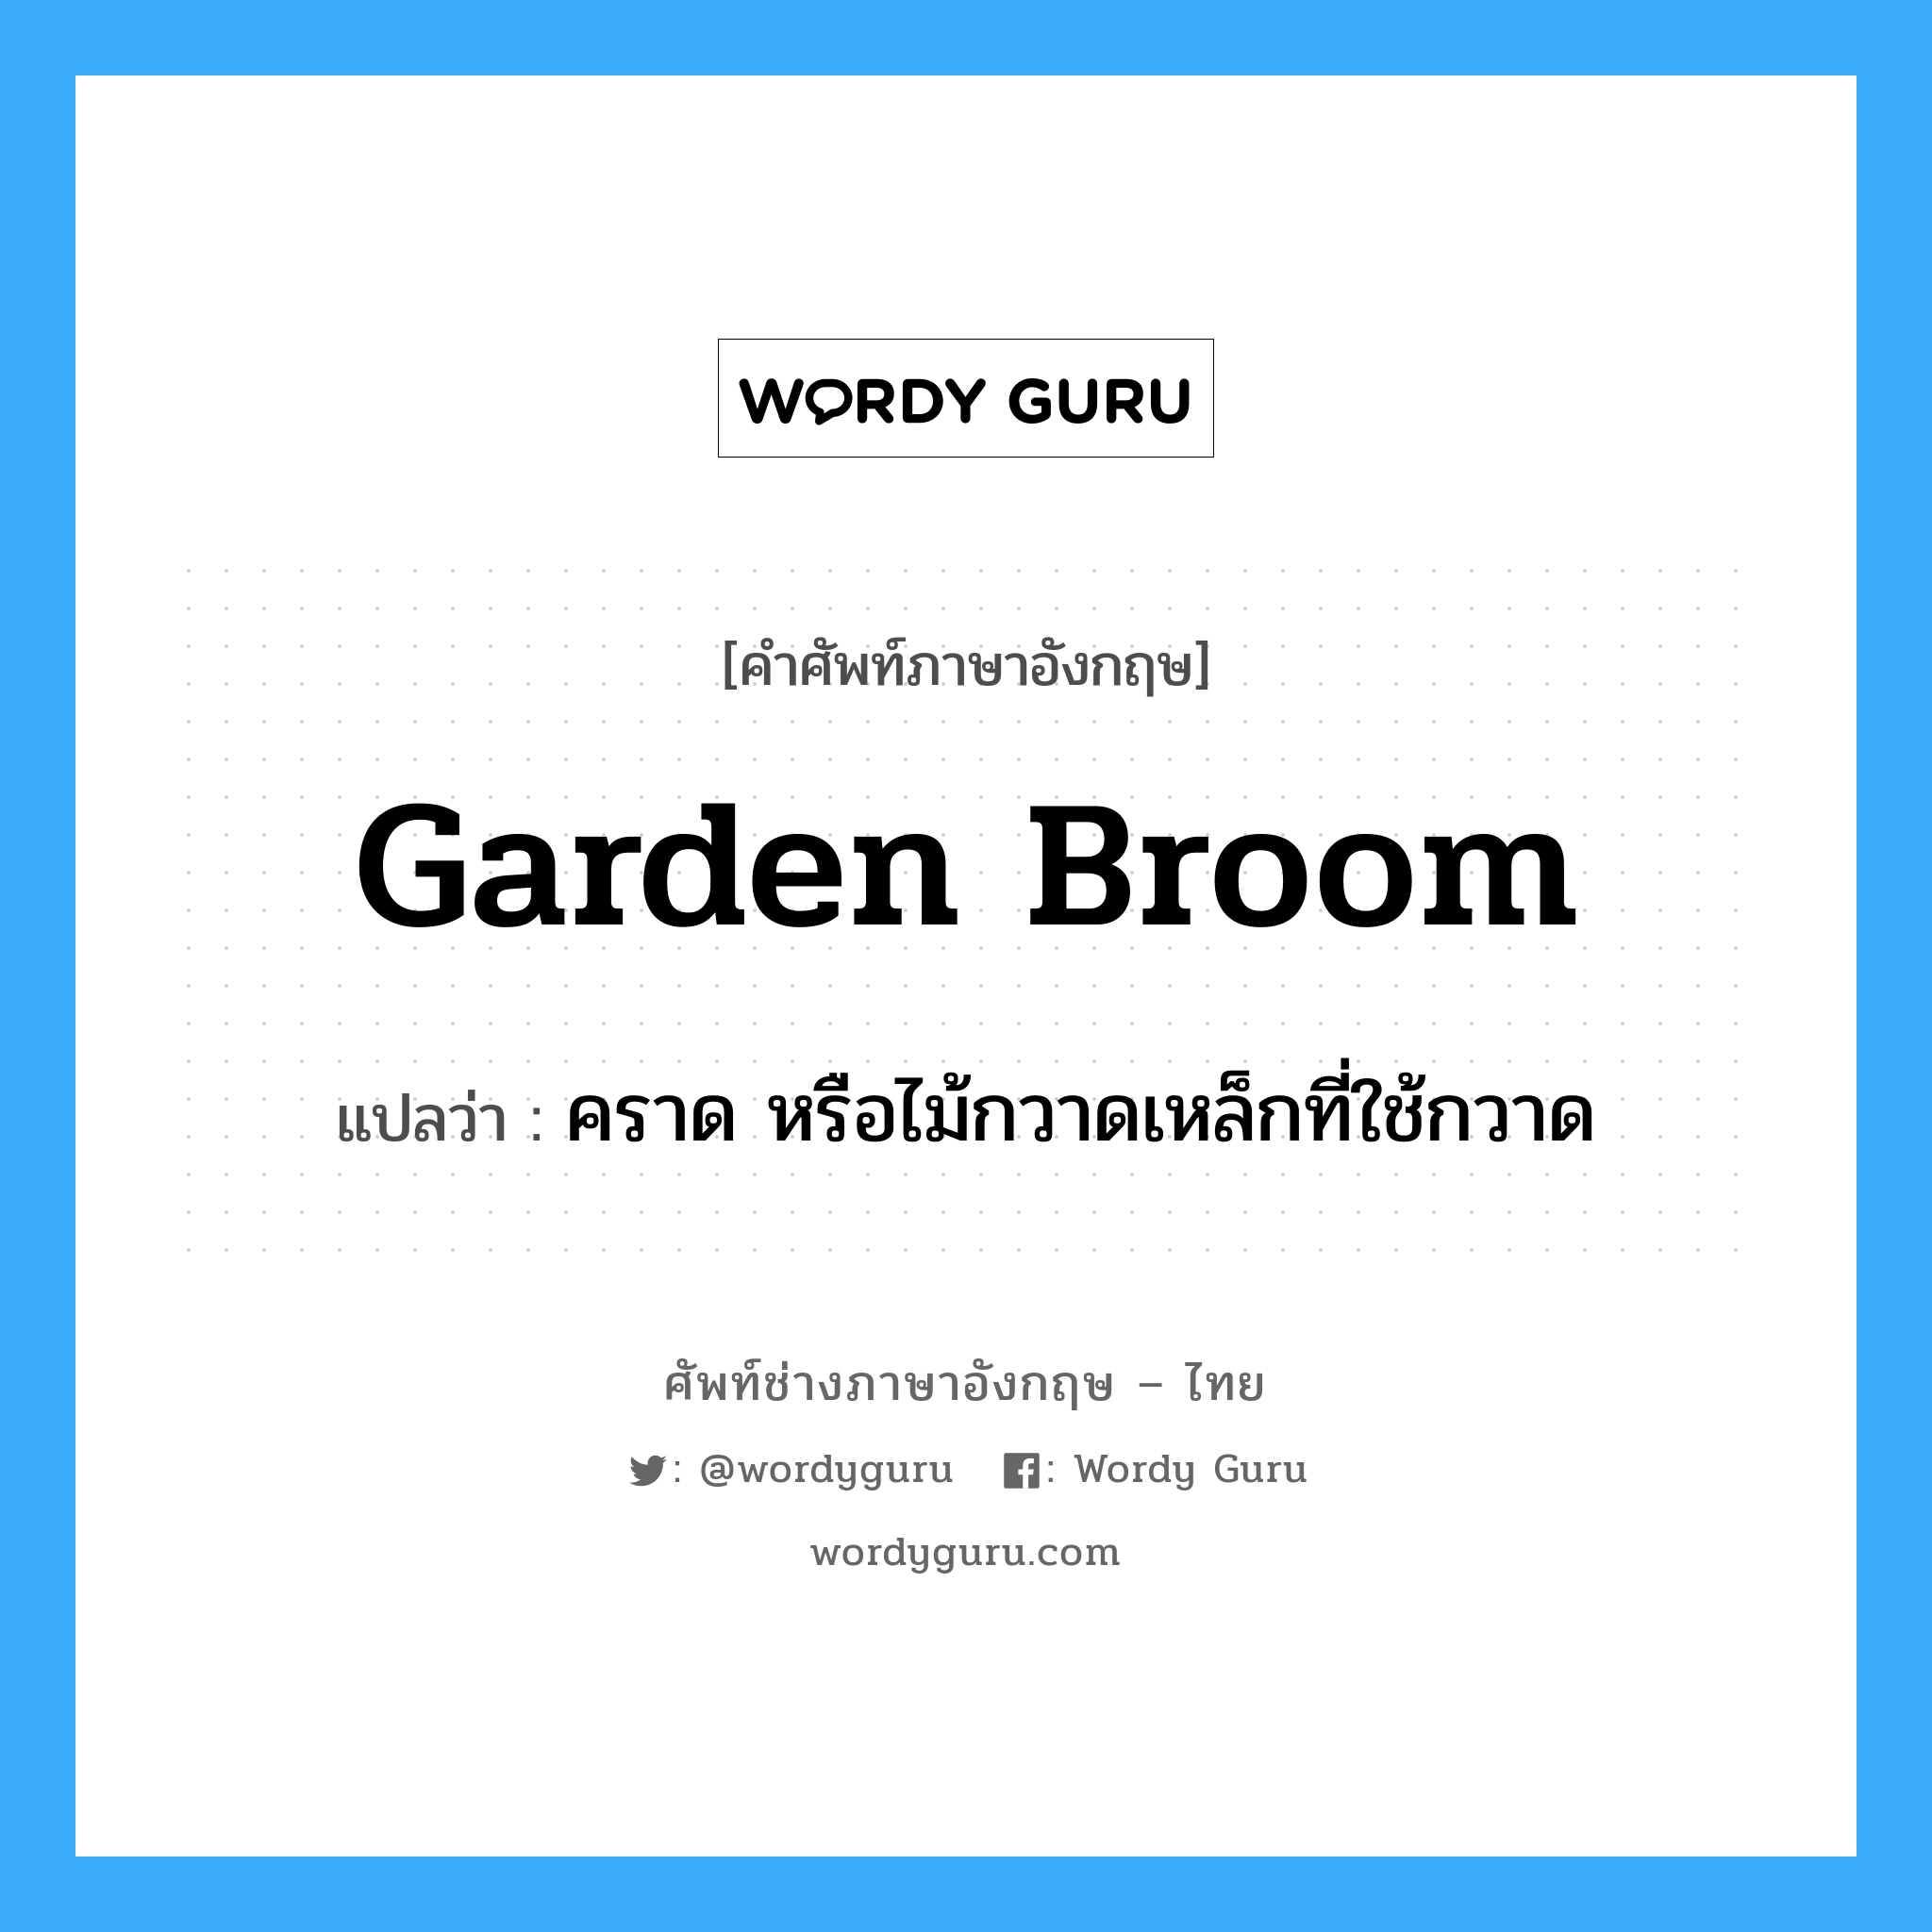 คราด หรือไม้กวาดเหล็กที่ใช้กวาด ภาษาอังกฤษ?, คำศัพท์ช่างภาษาอังกฤษ - ไทย คราด หรือไม้กวาดเหล็กที่ใช้กวาด คำศัพท์ภาษาอังกฤษ คราด หรือไม้กวาดเหล็กที่ใช้กวาด แปลว่า garden broom